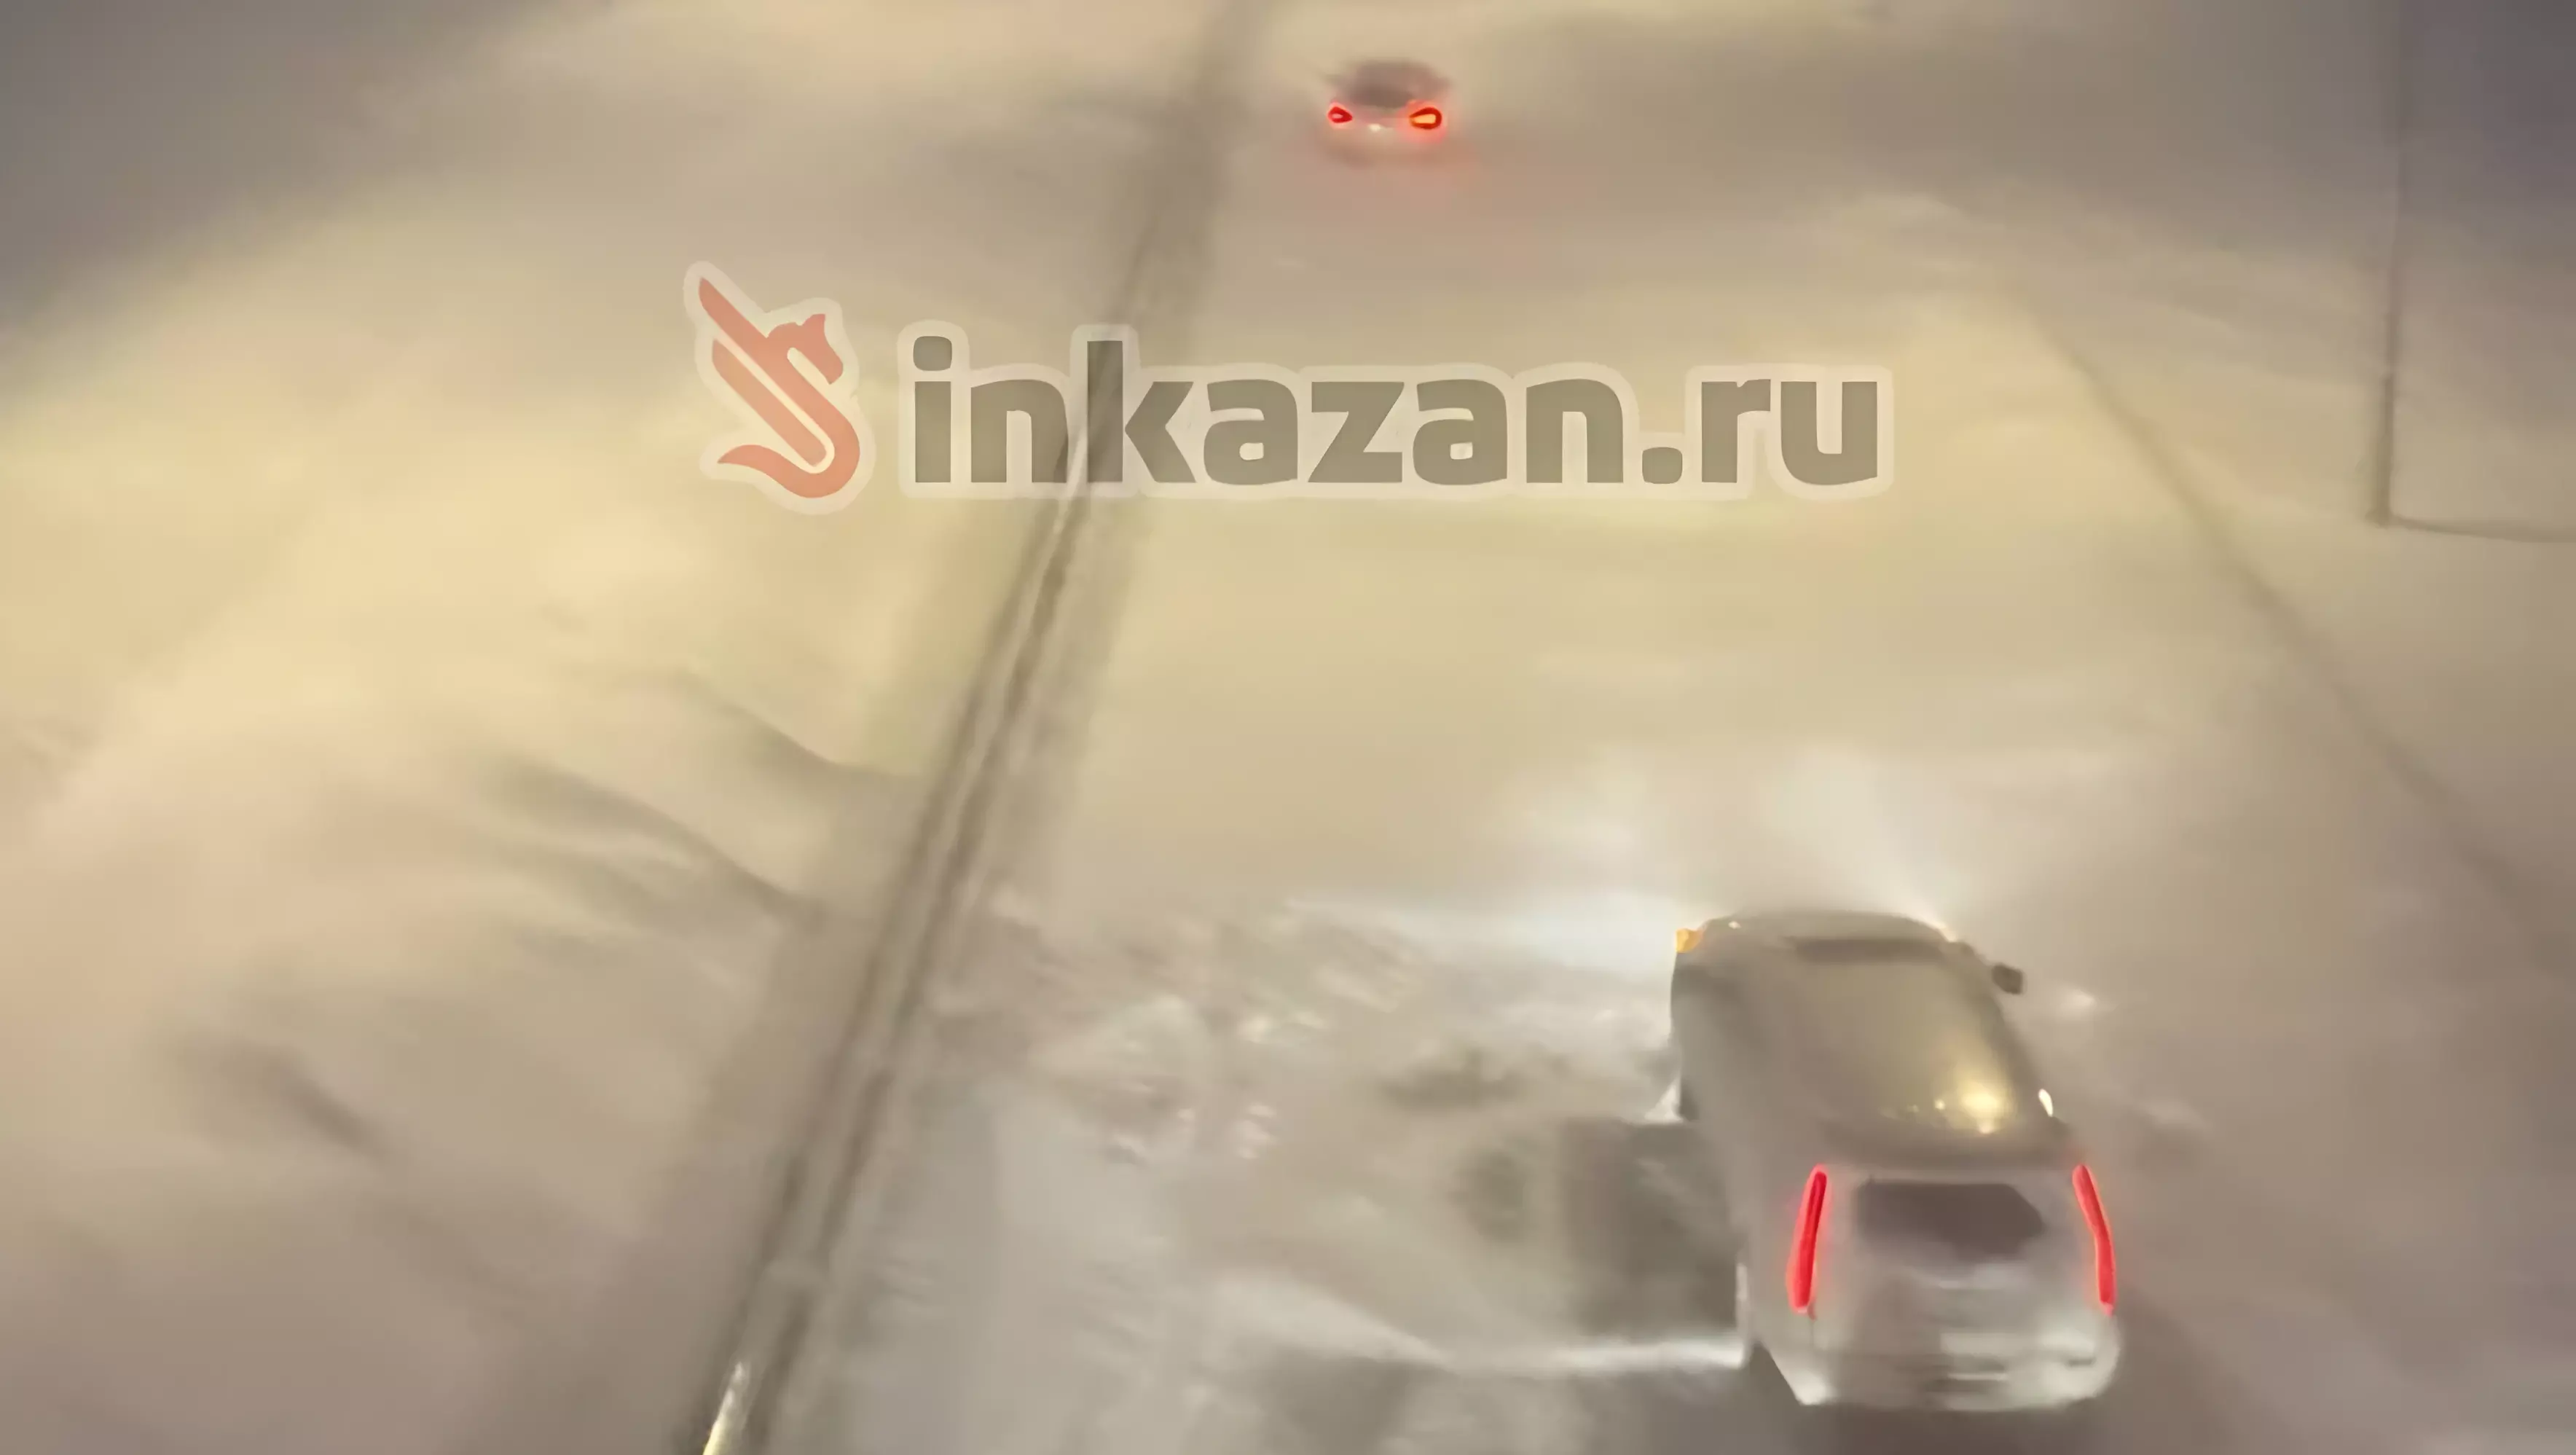 Водители пожаловались на нечищенные дороги по М-12 «Москва — Казань»